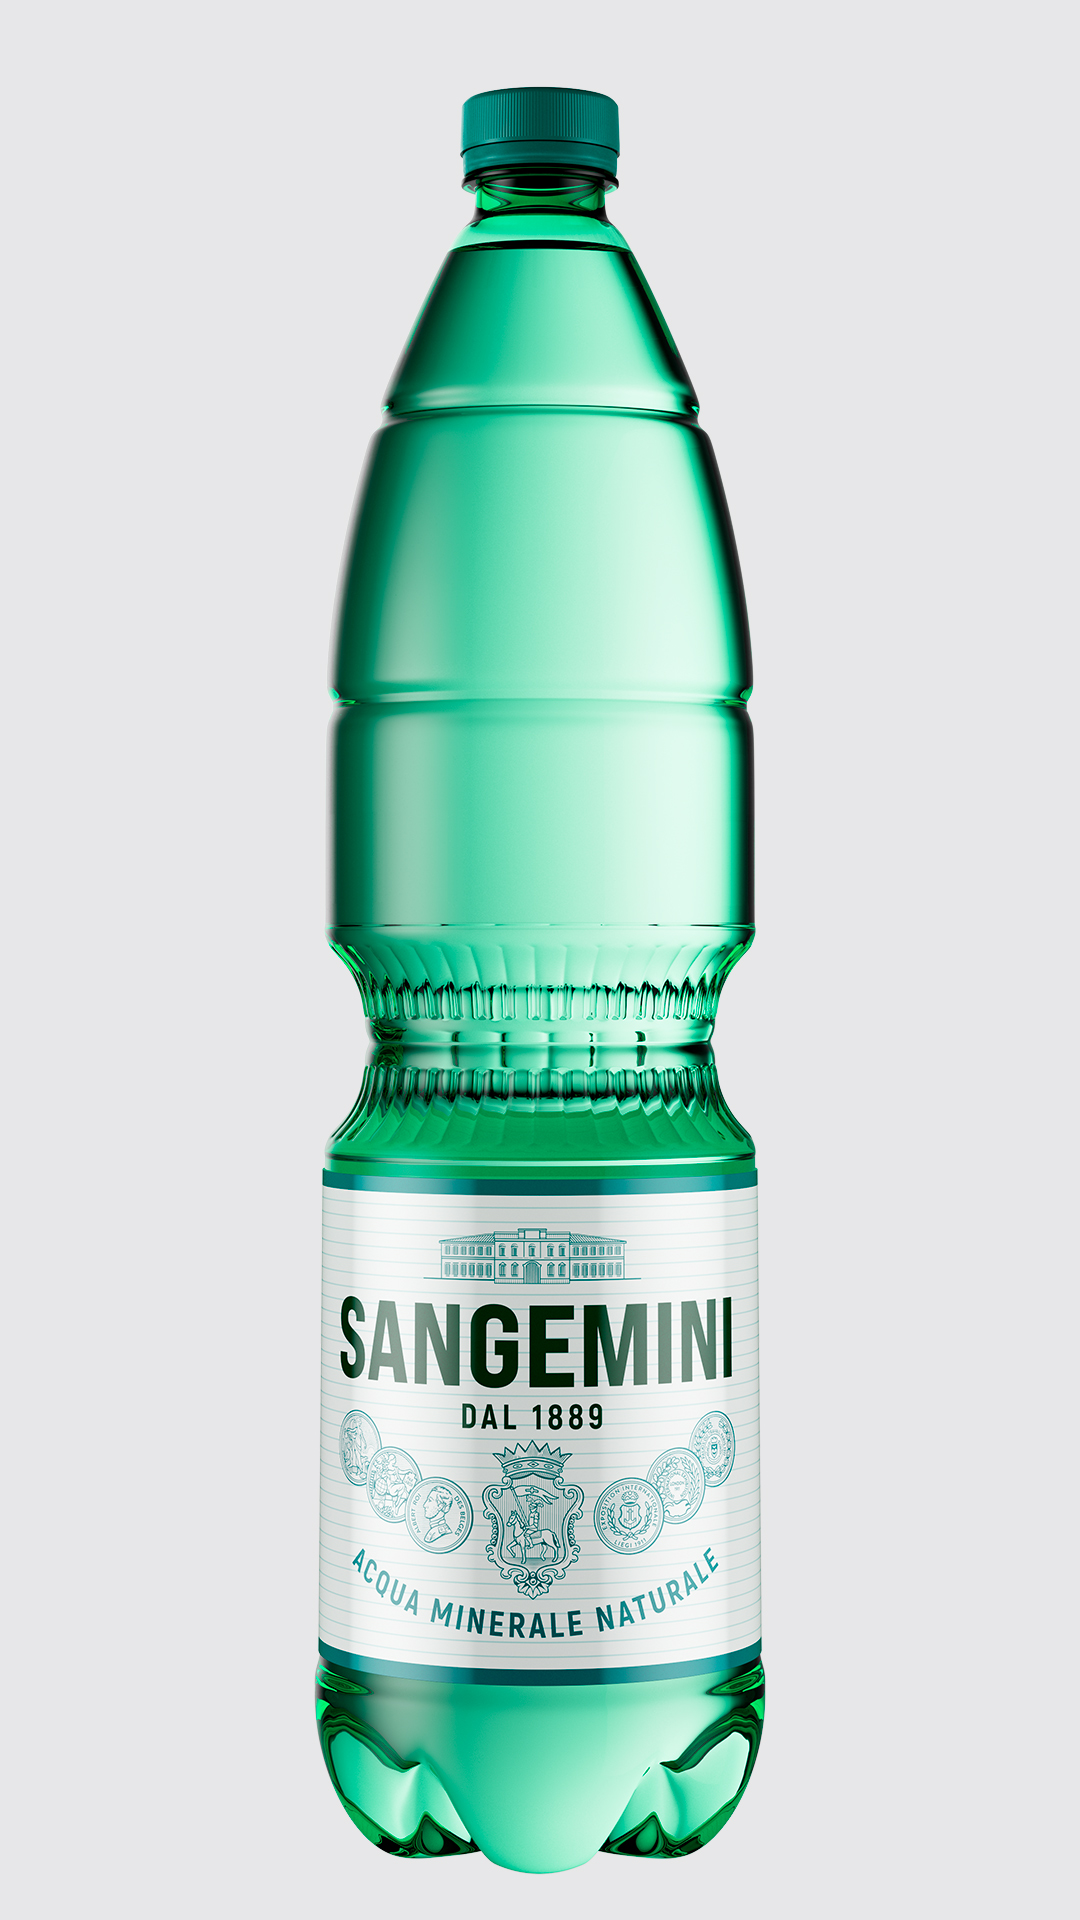 Sangemini Restyling Rossetti Brand Design new bottle